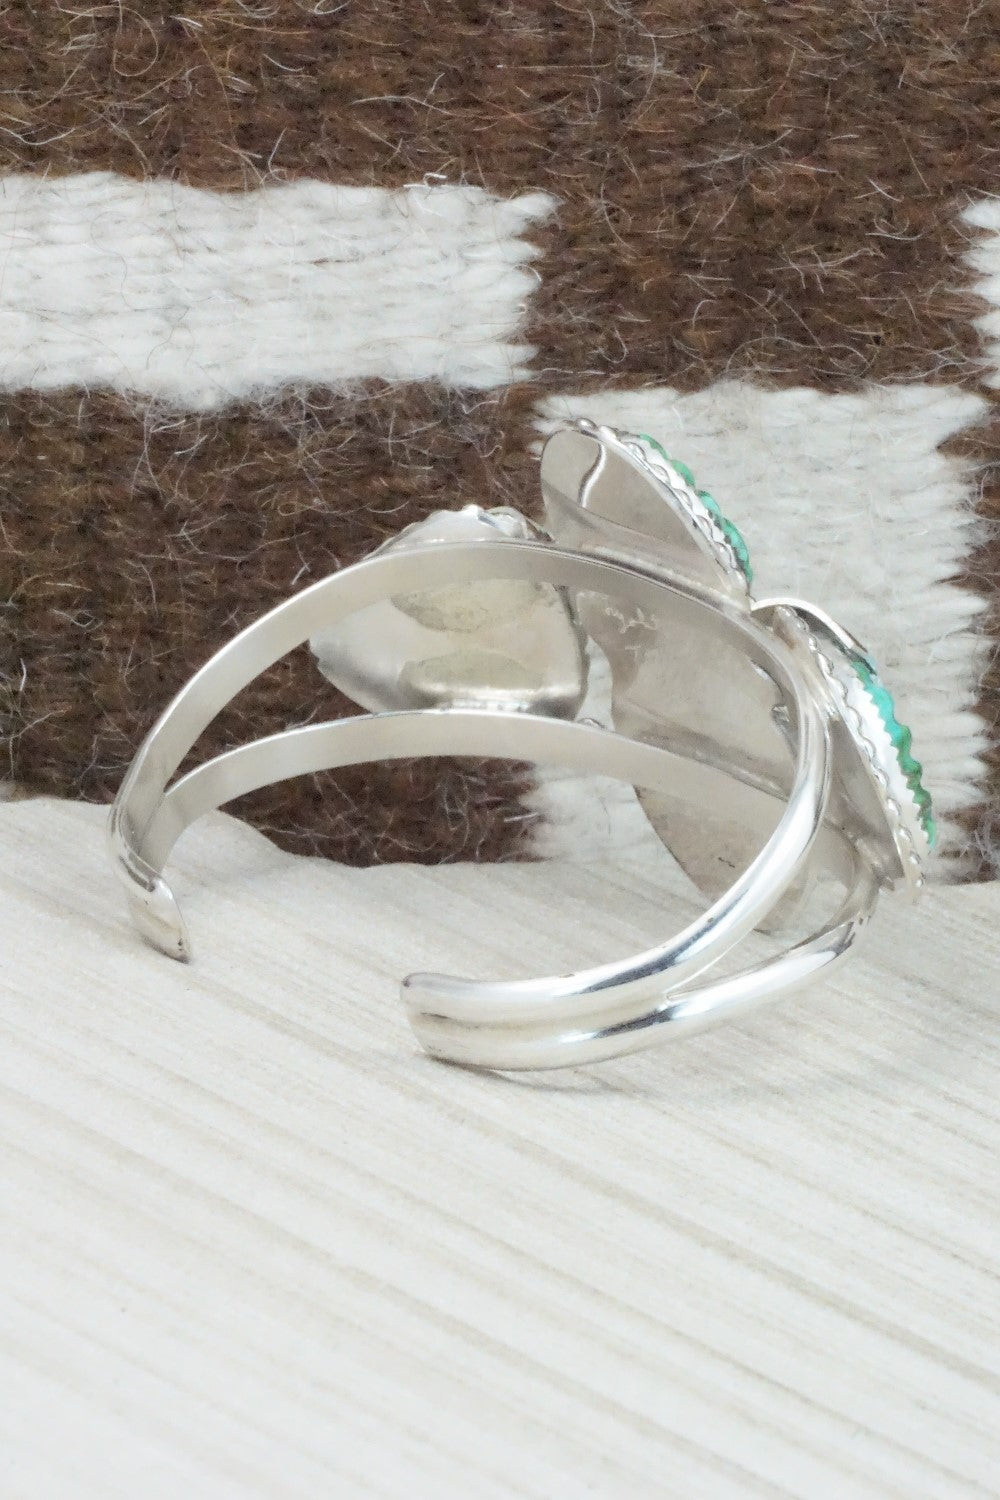 Turquoise & Sterling Silver Bracelet - Lyolita Tsattie